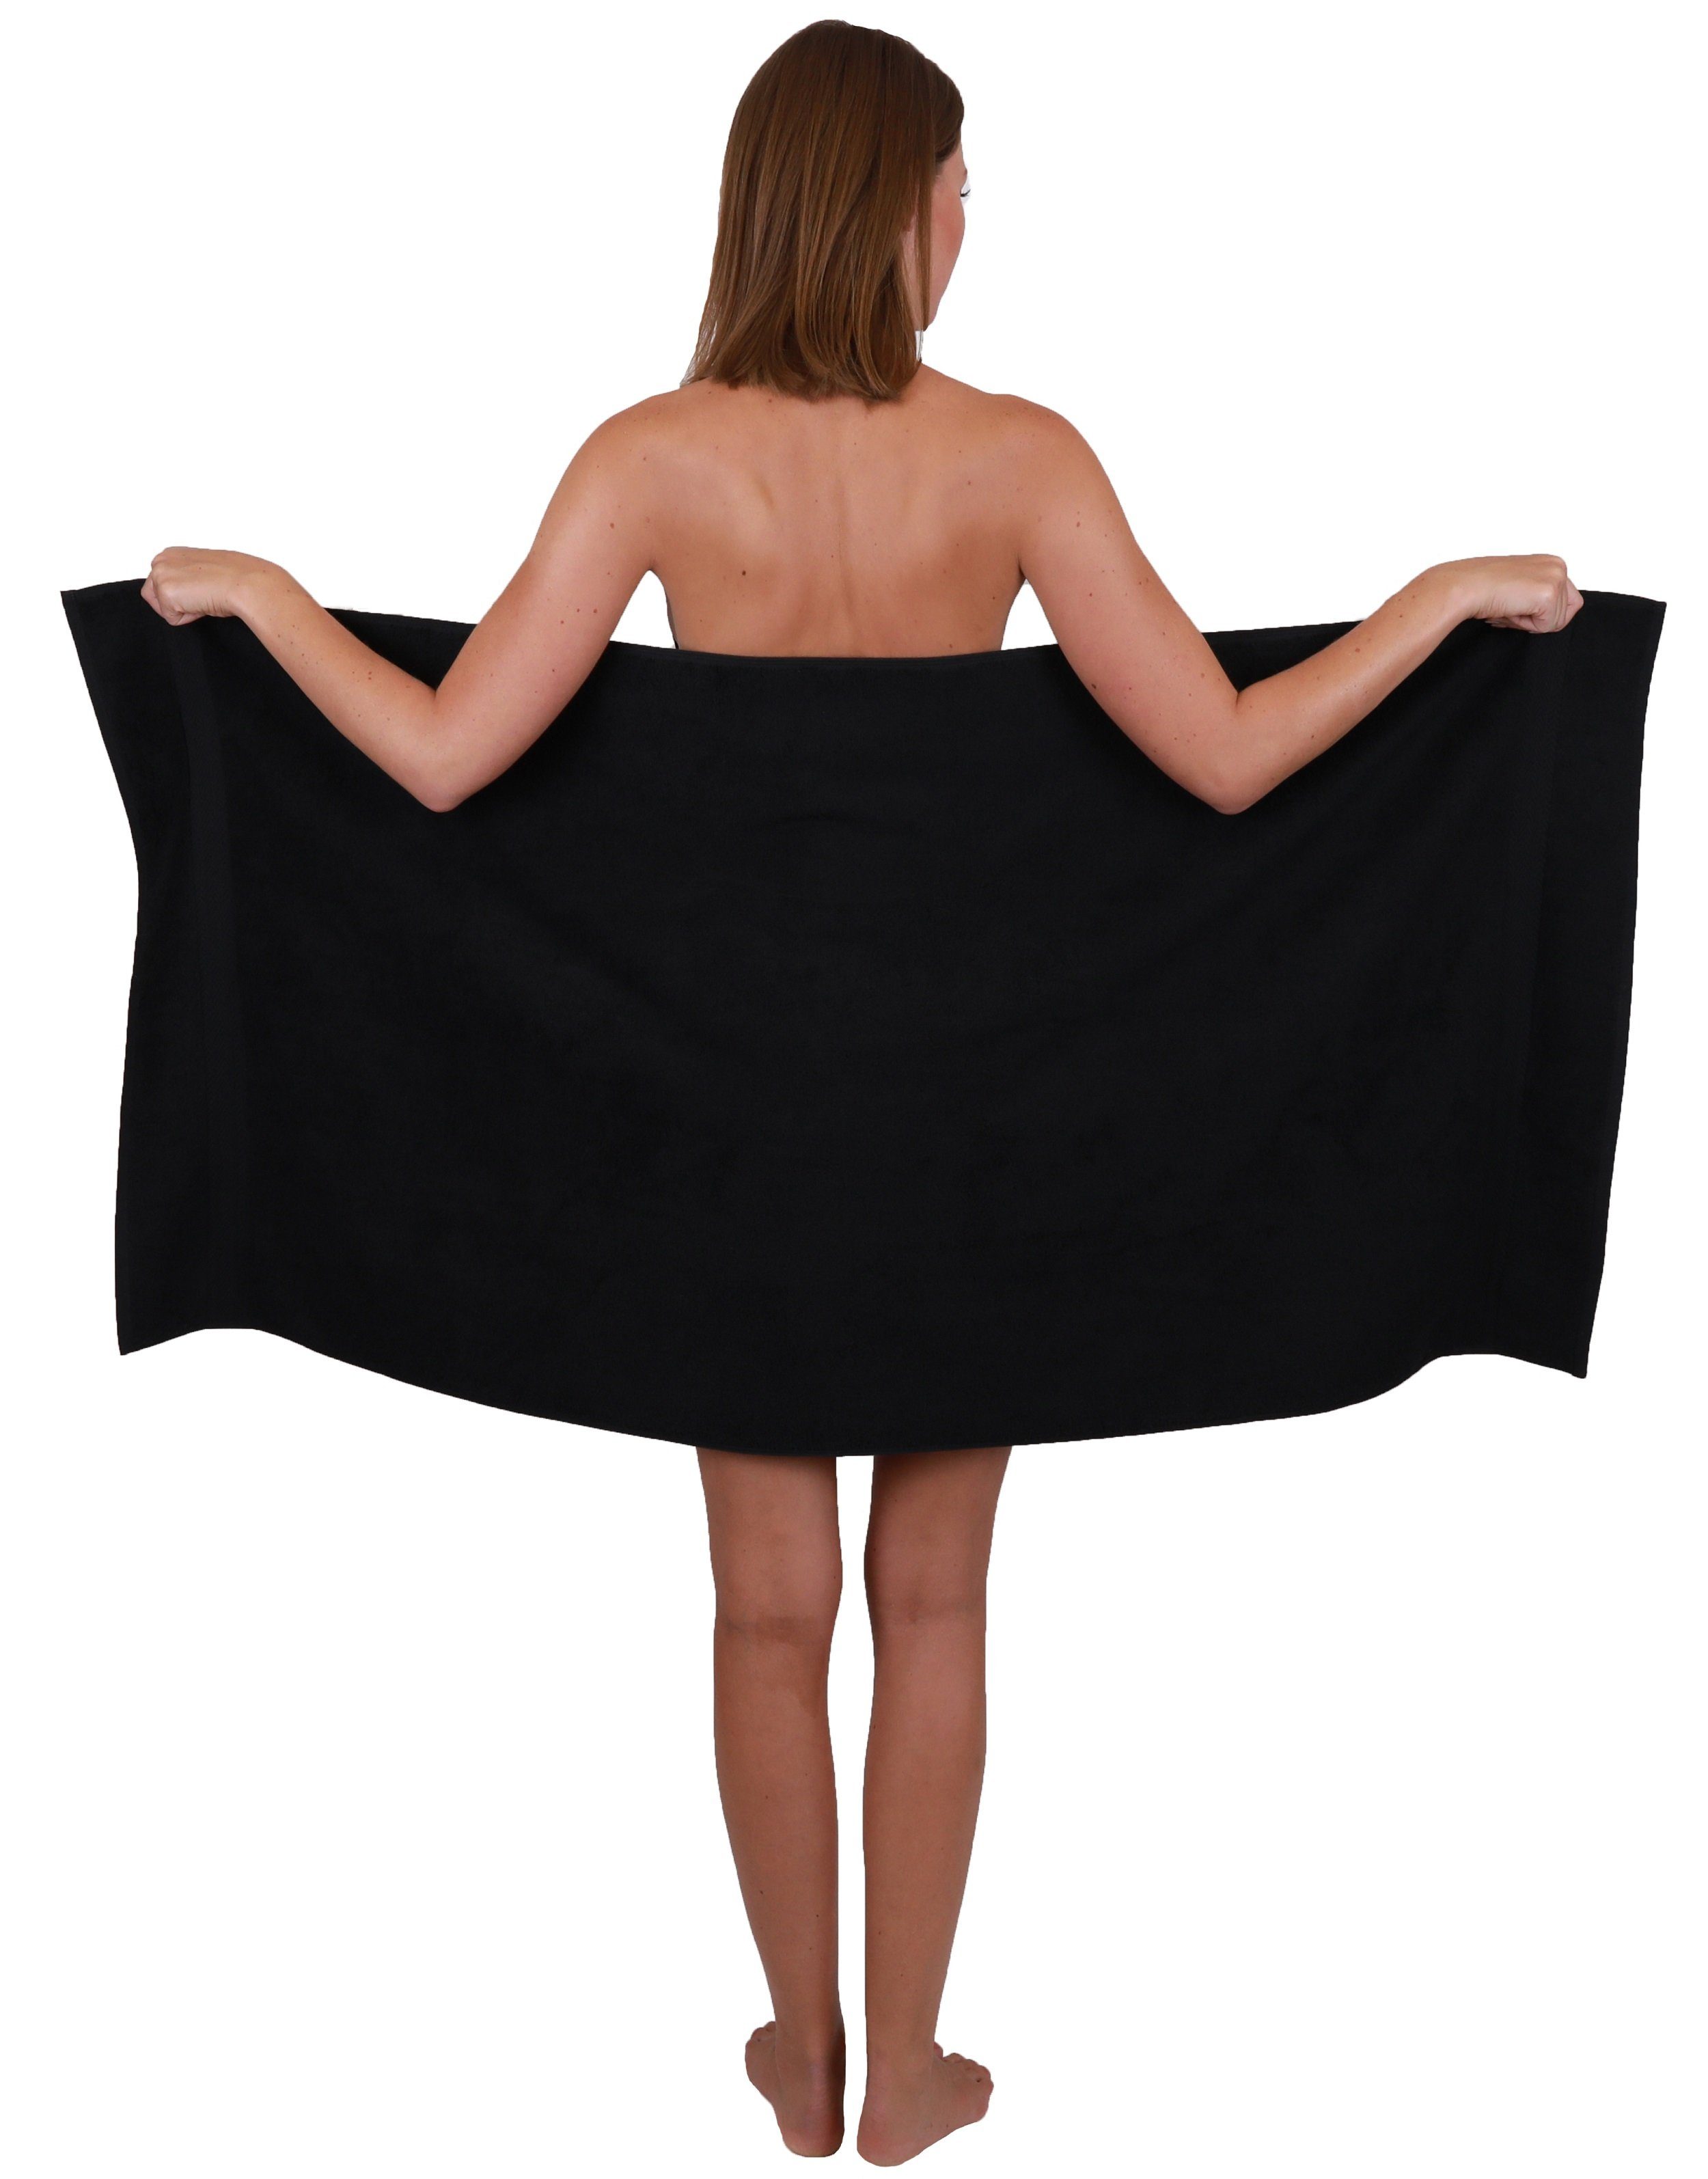 Betz und Baumwolle 10-TLG. Handtuch Handtuch-Set nussbraun schwarz, Set Farbe Classic 100%